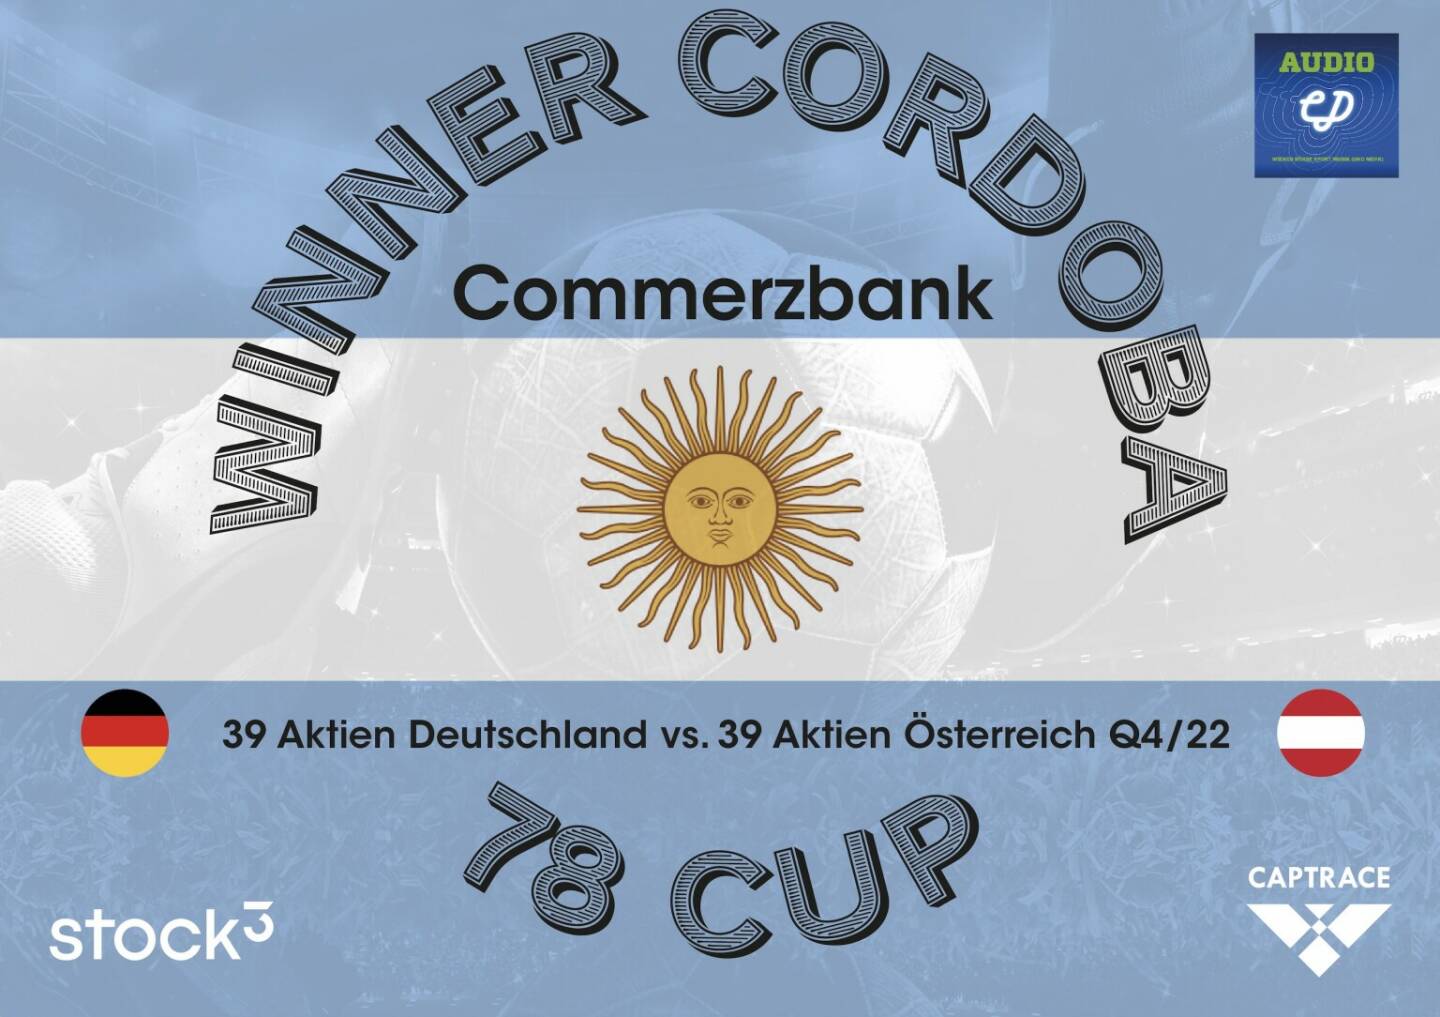 Commerzbank gewinnt den Cordoba 78 Cup zum 45. Geburtstag des 3:2, Presenter waren Audio-CD.at, stock3 und Captrace